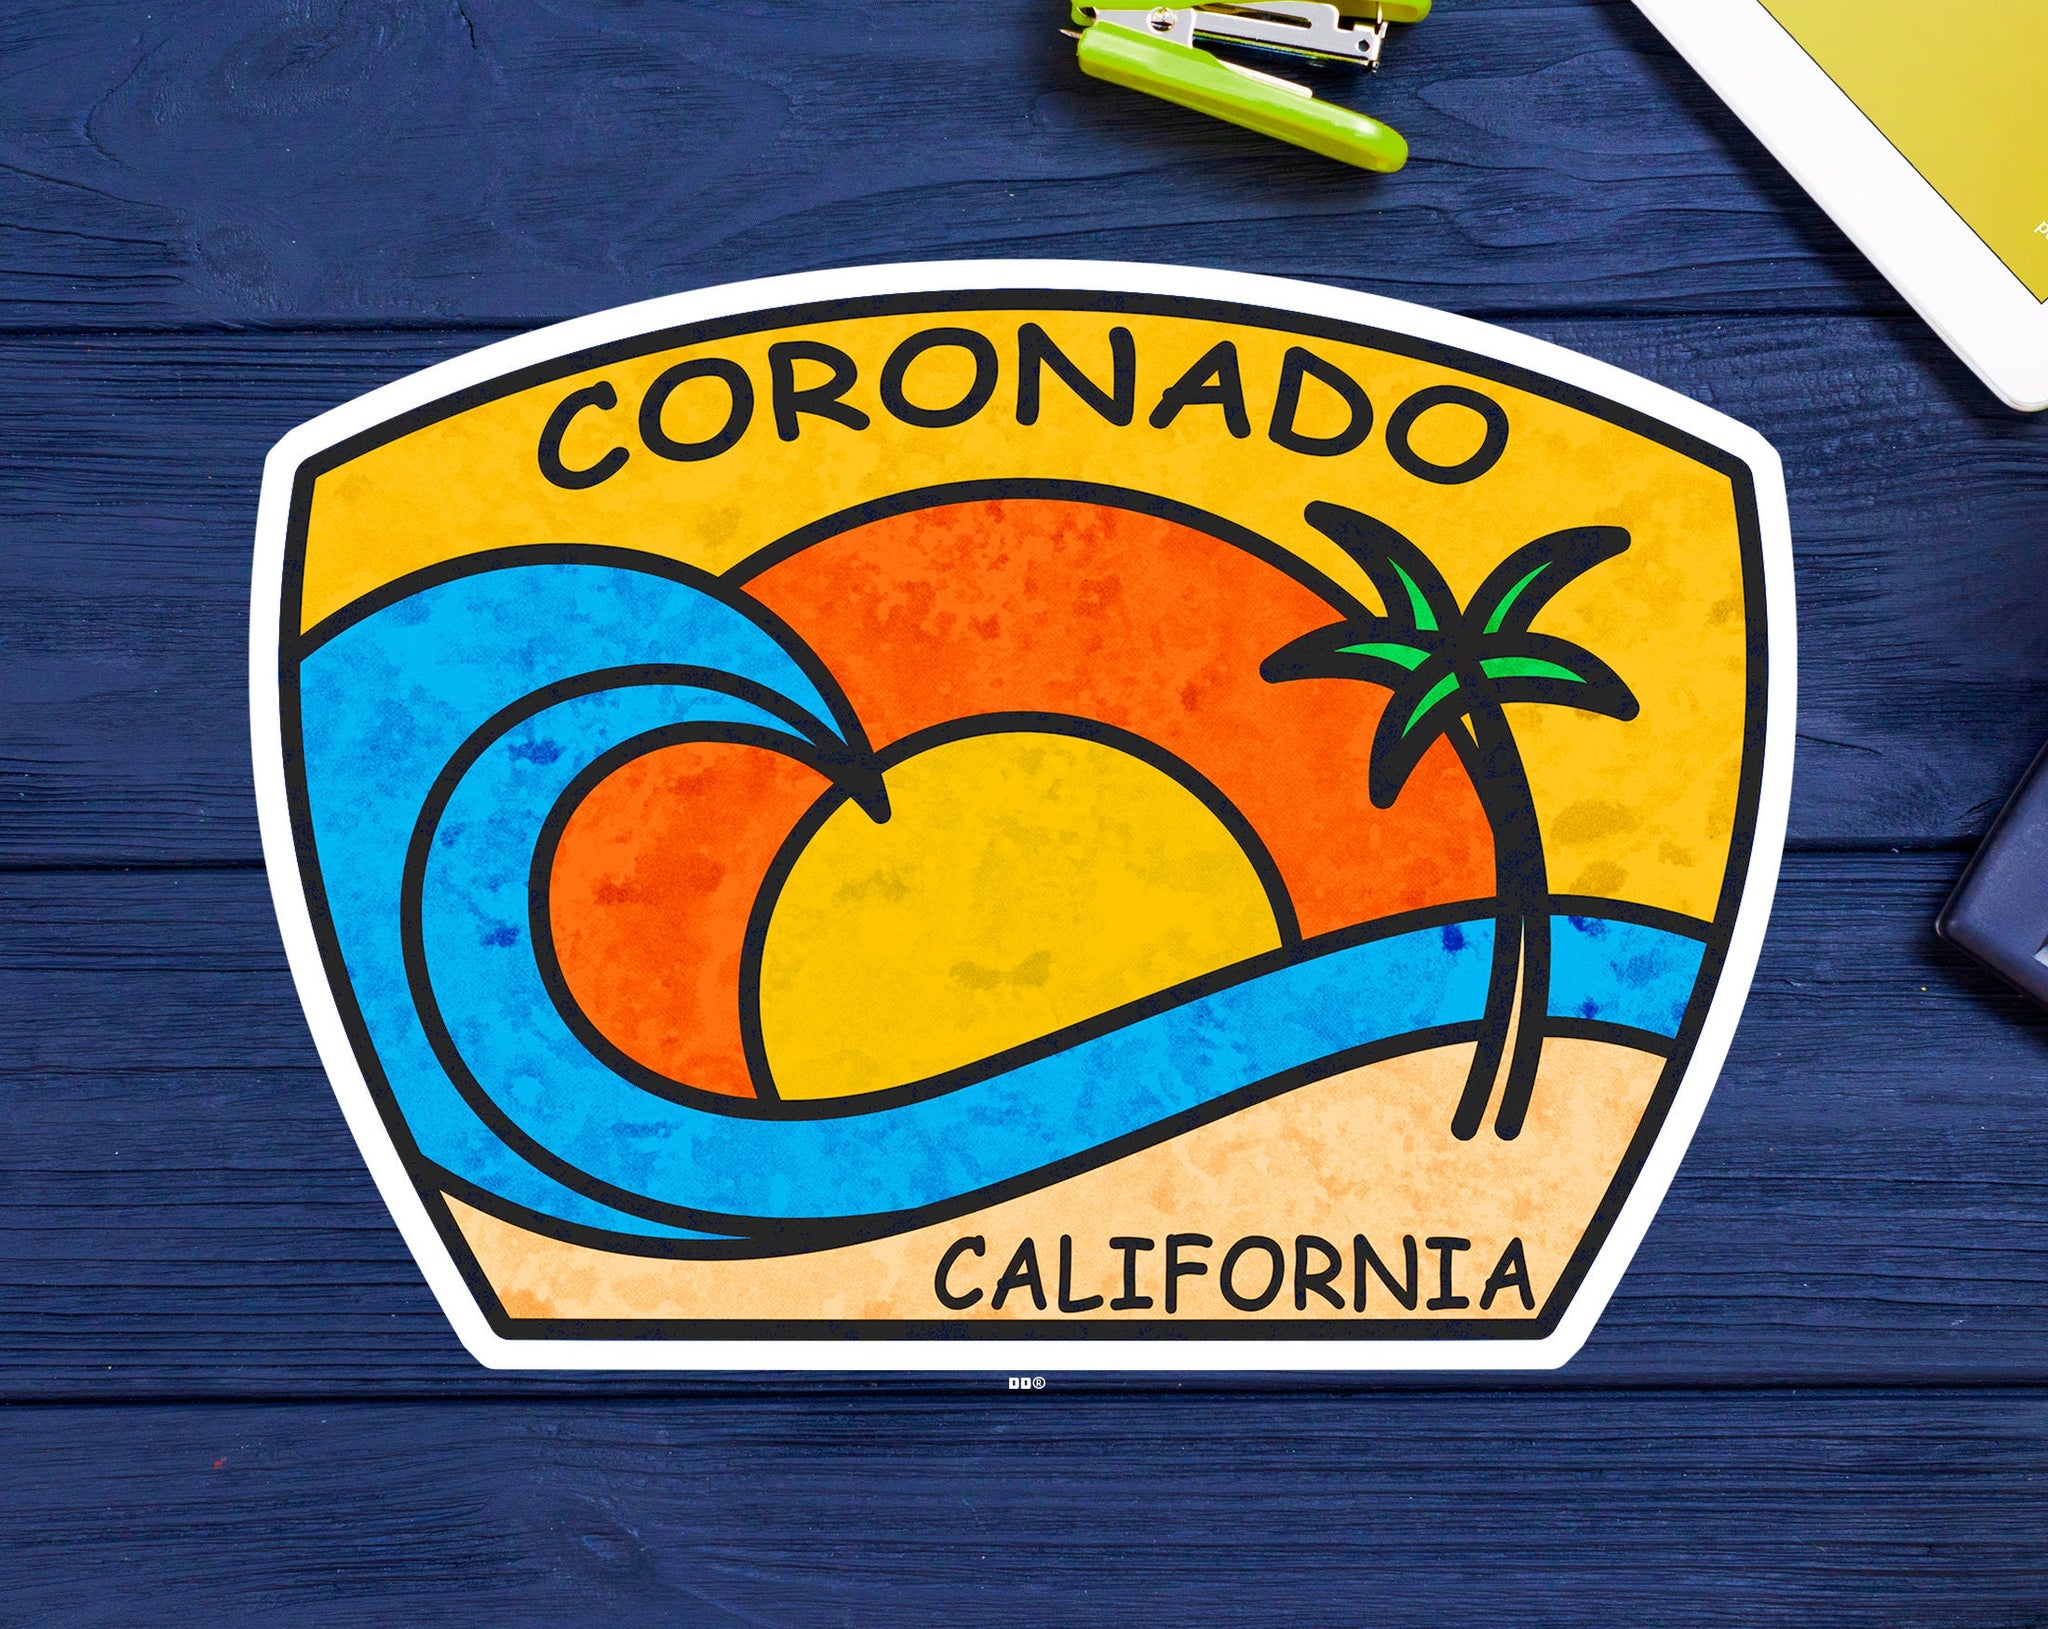 Coronado California Decal Sticker 3.75" x 2.75" Vinyl